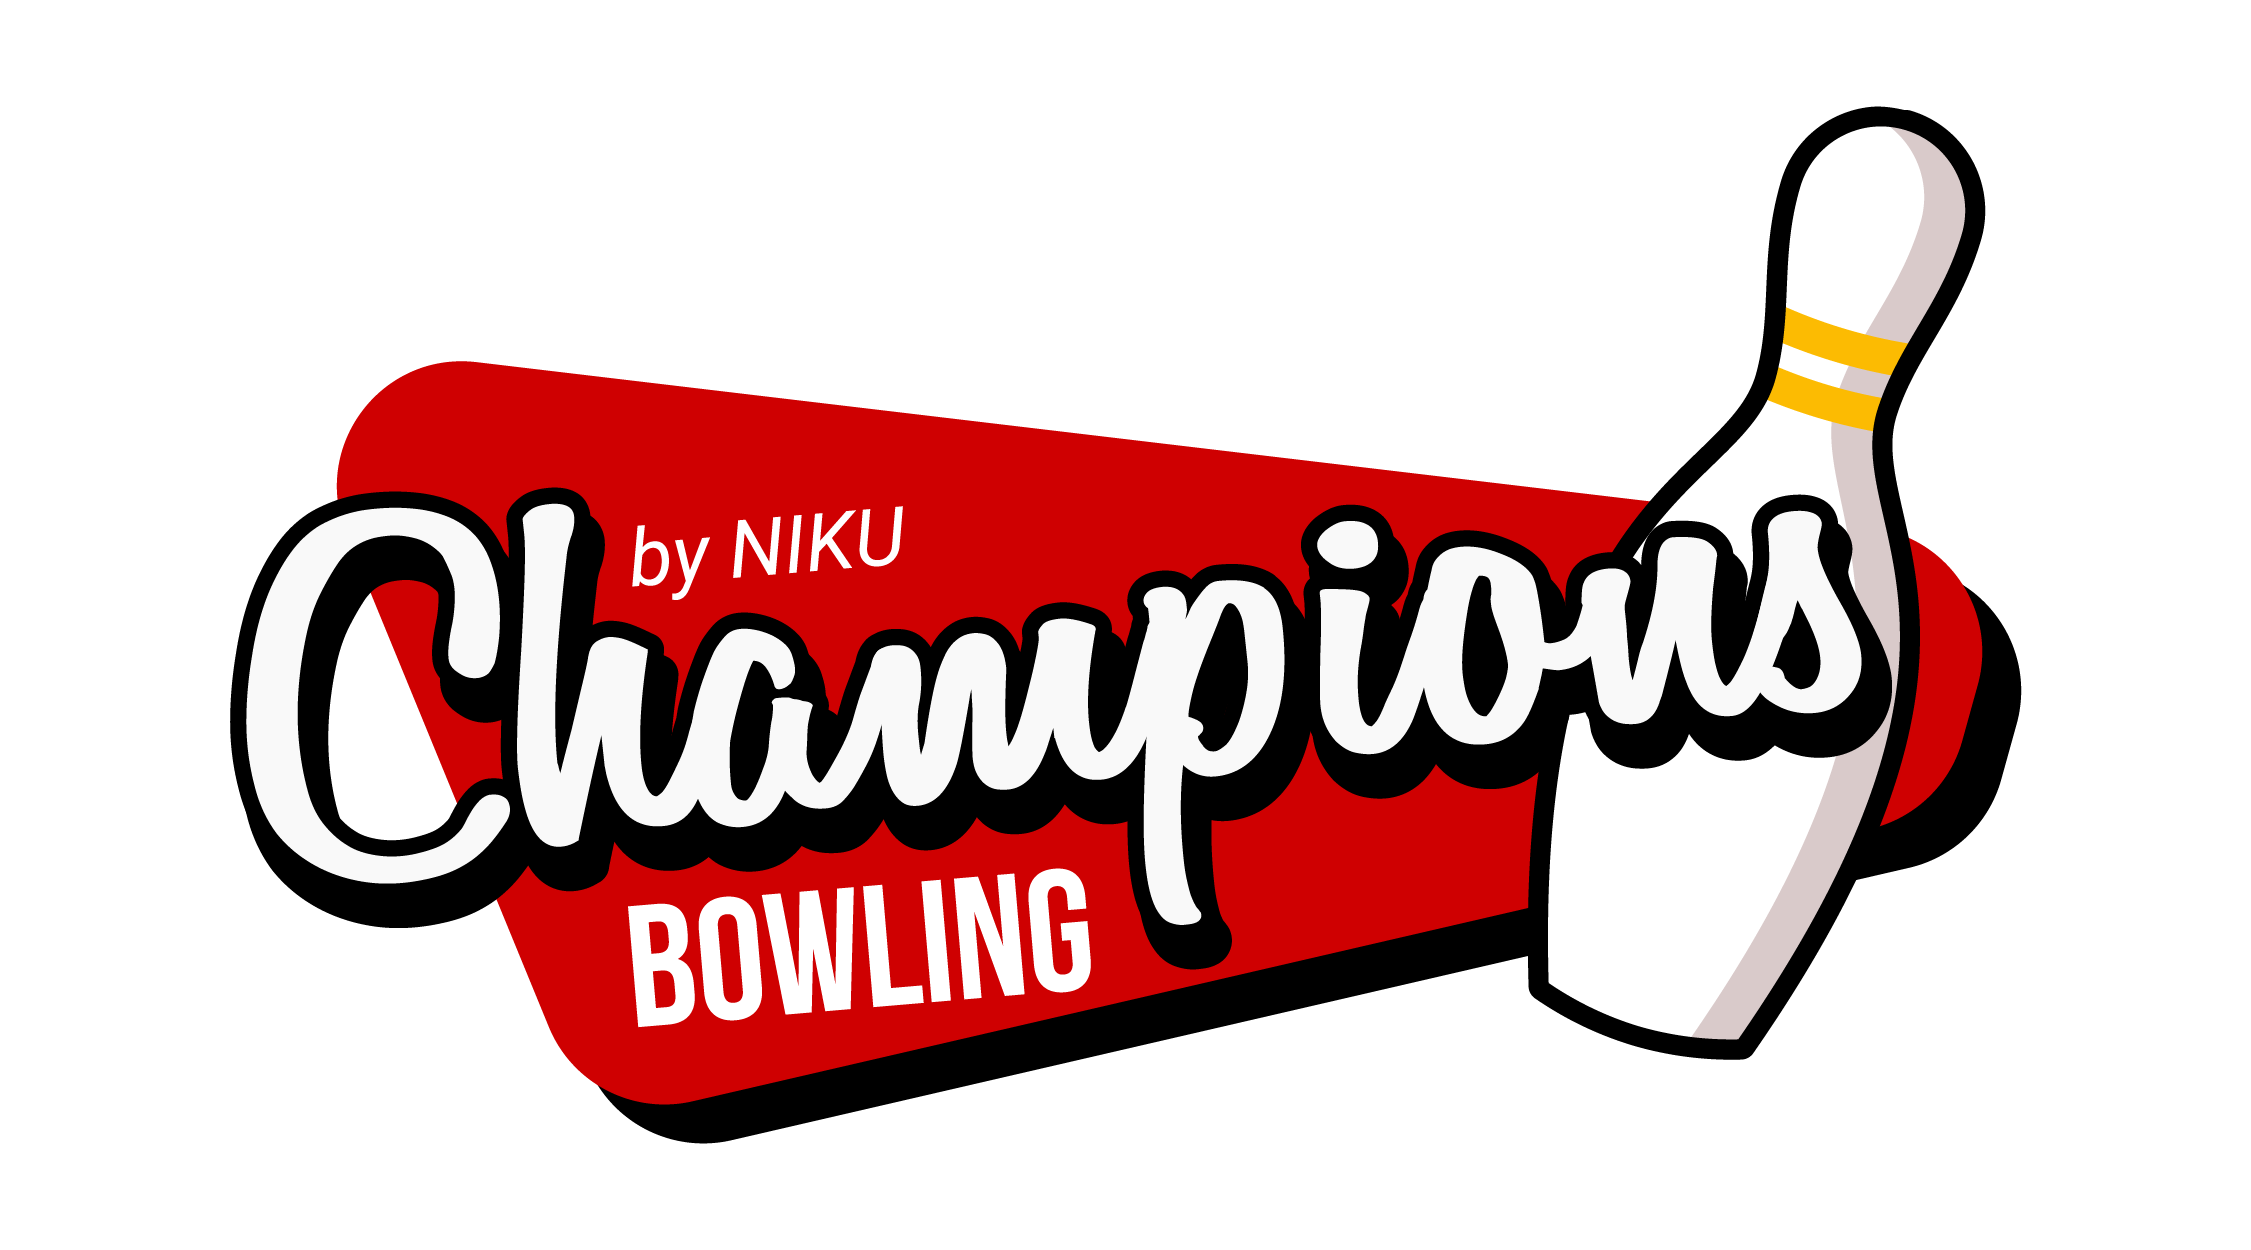 Champions Bowling